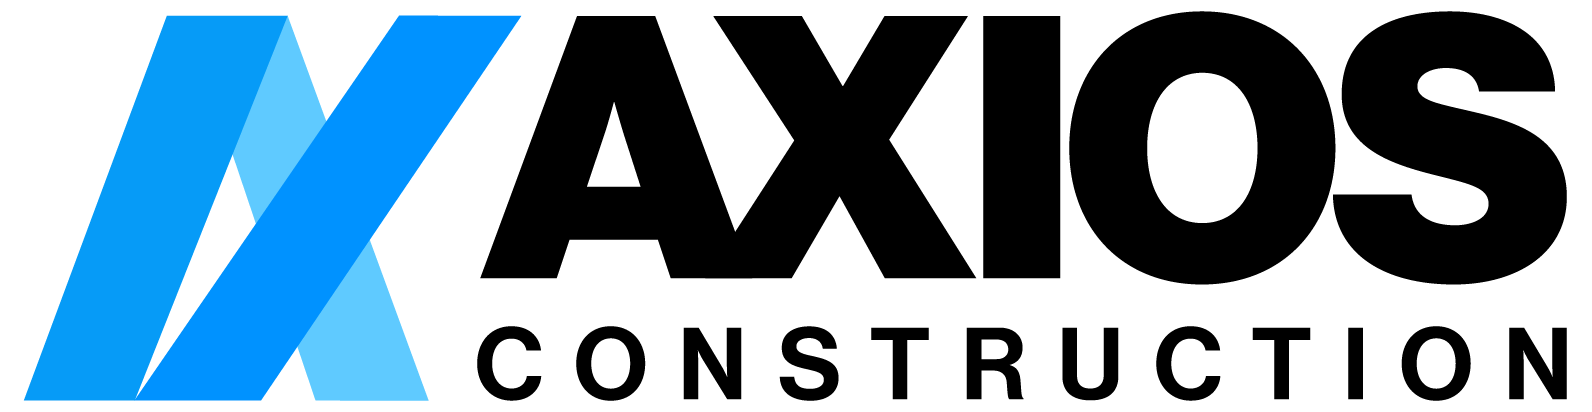 AXIOS Construction